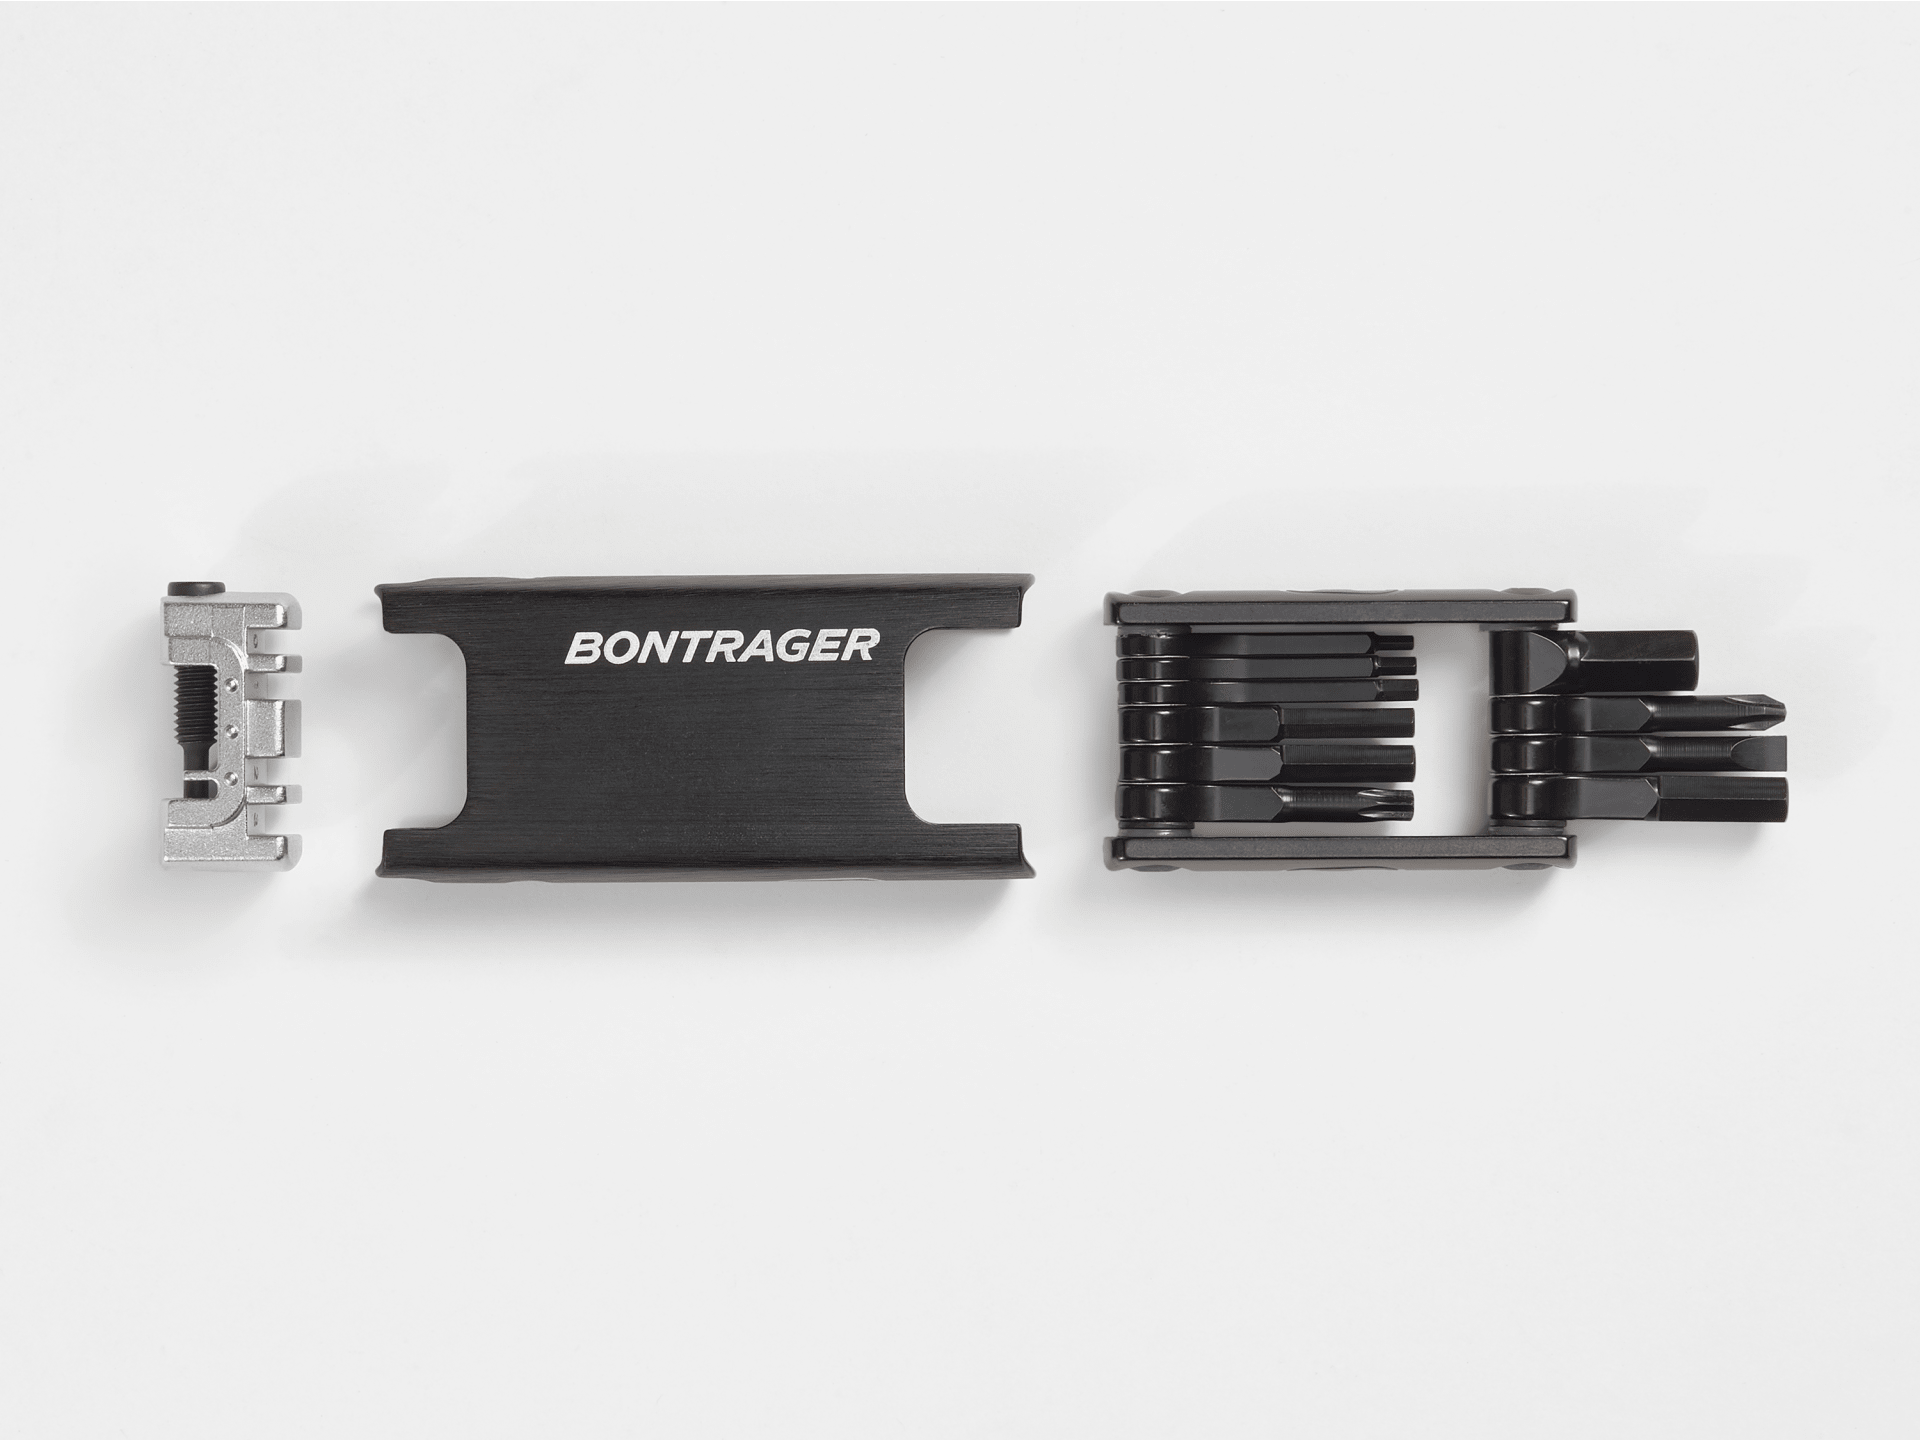 Bontrager Pro Multi-Tool